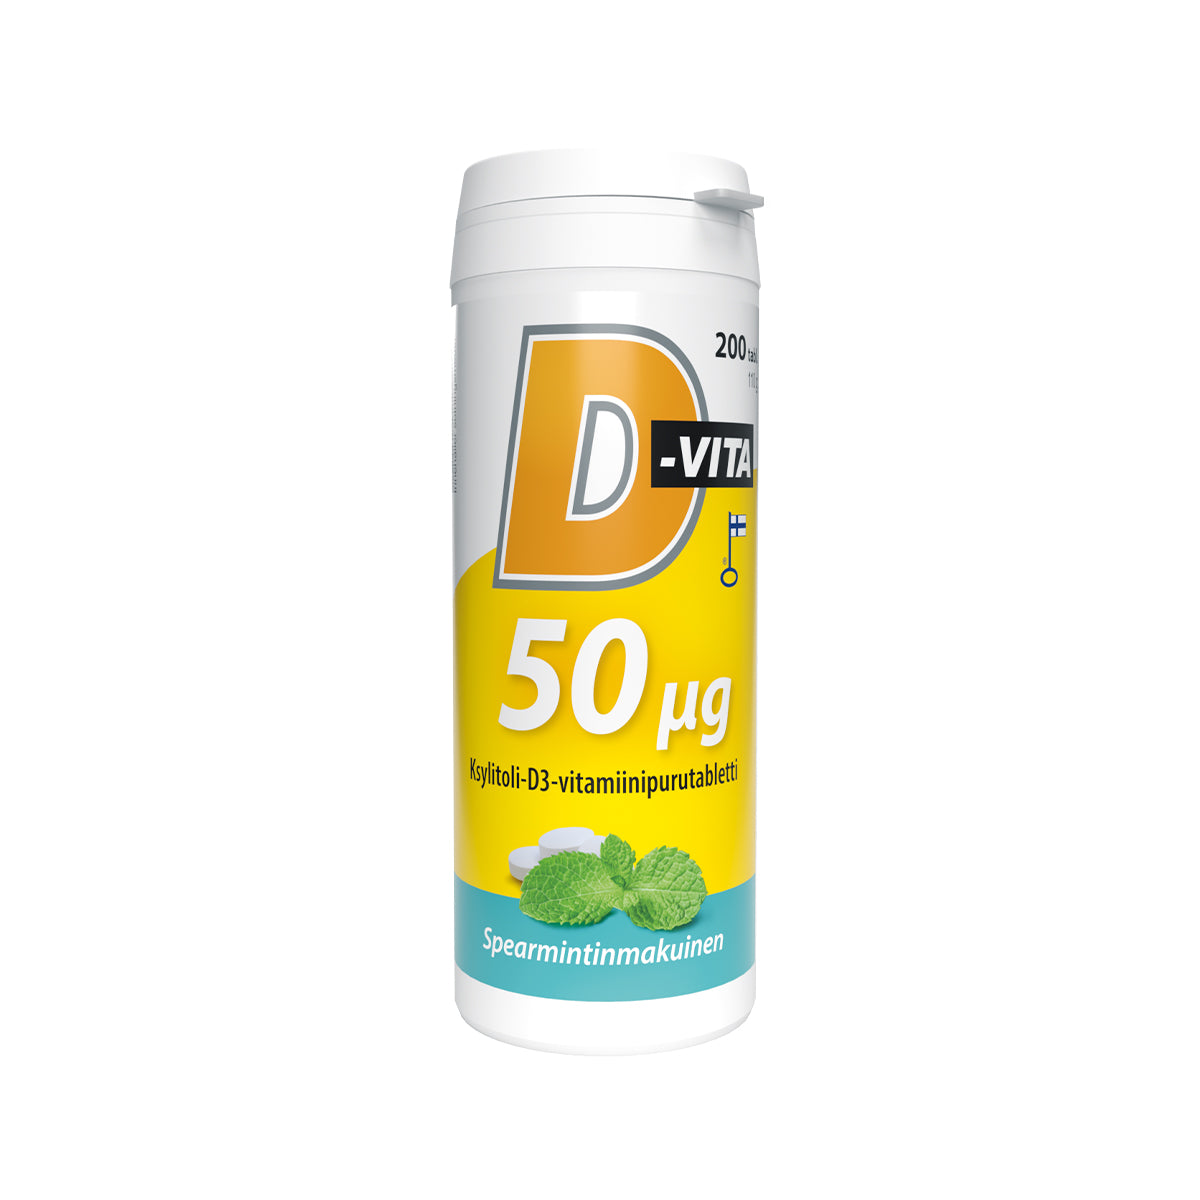 D-Vita 50 µg  - Spearmintinmakuinen purutabletti 200 tabl.